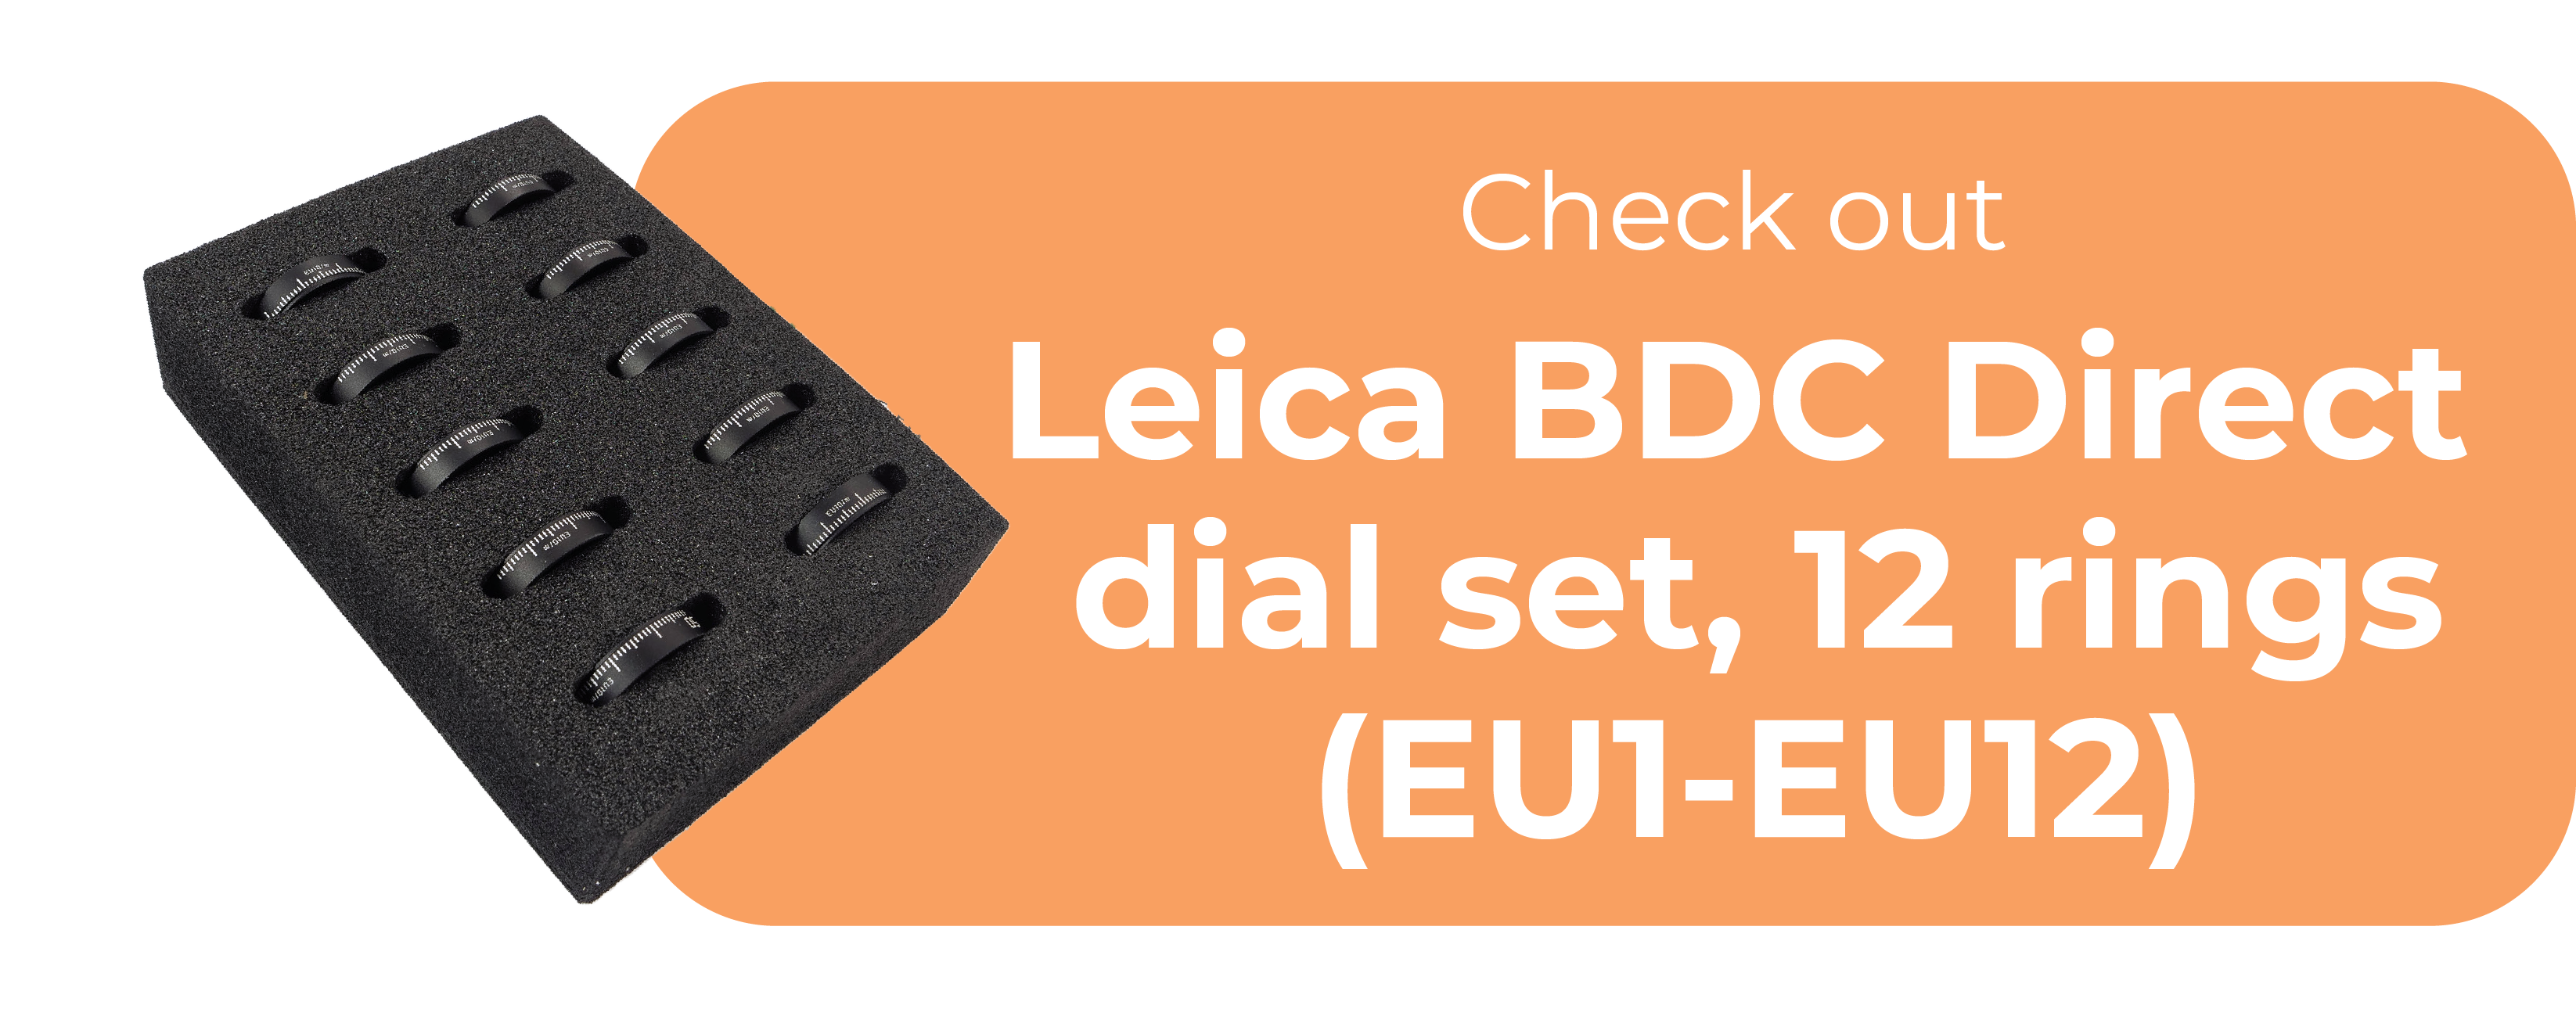 Leica BDC Direct dial set cta